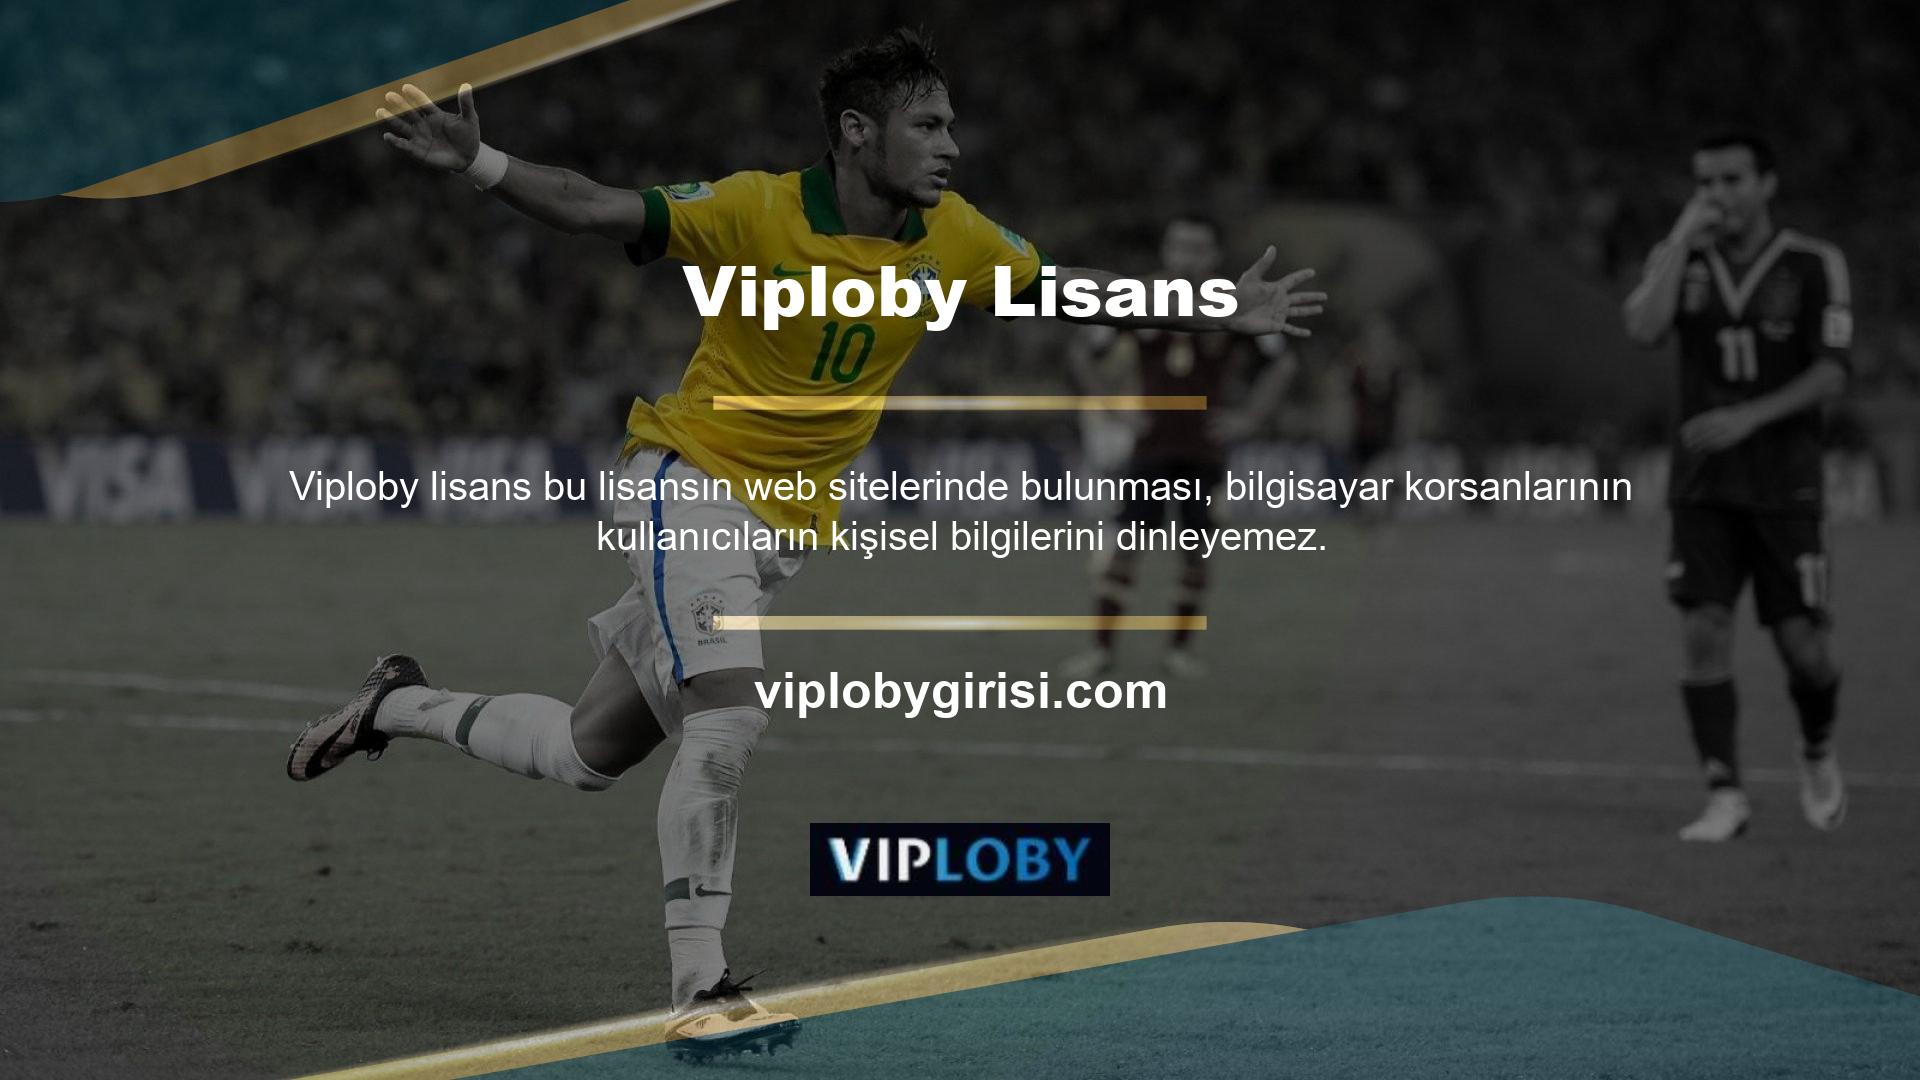 Viploby erişim adresini düzenli olarak birden fazla konuma yayınlar